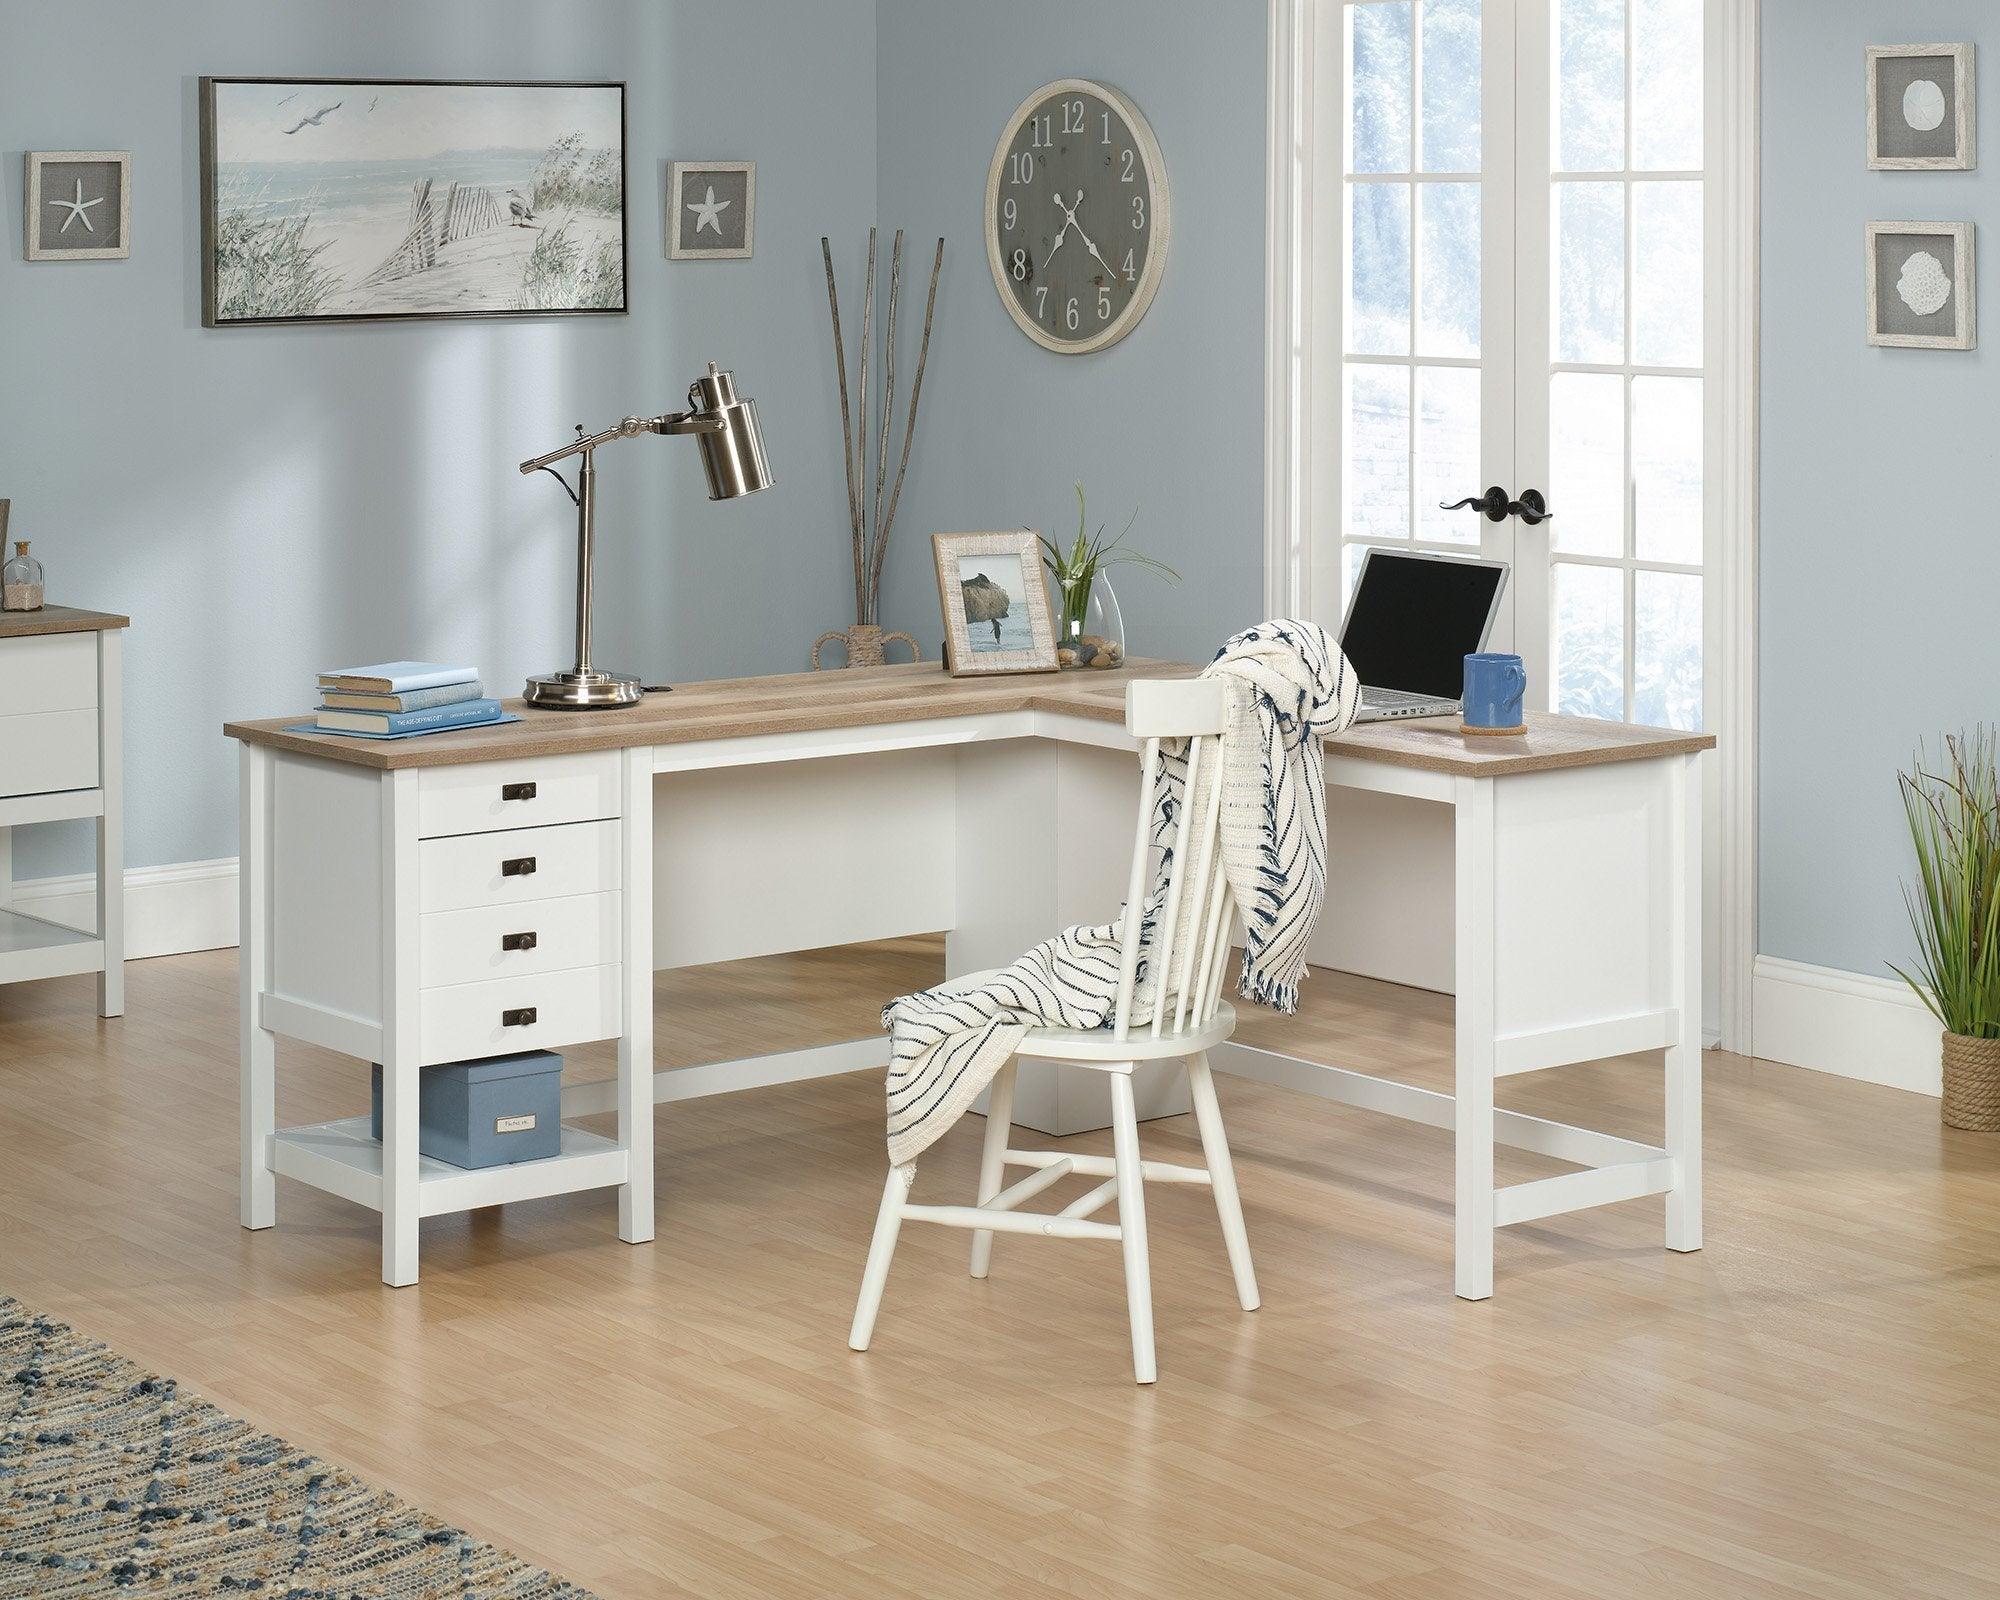 Shaker style l-shaped desk - crimblefest furniture - image 1